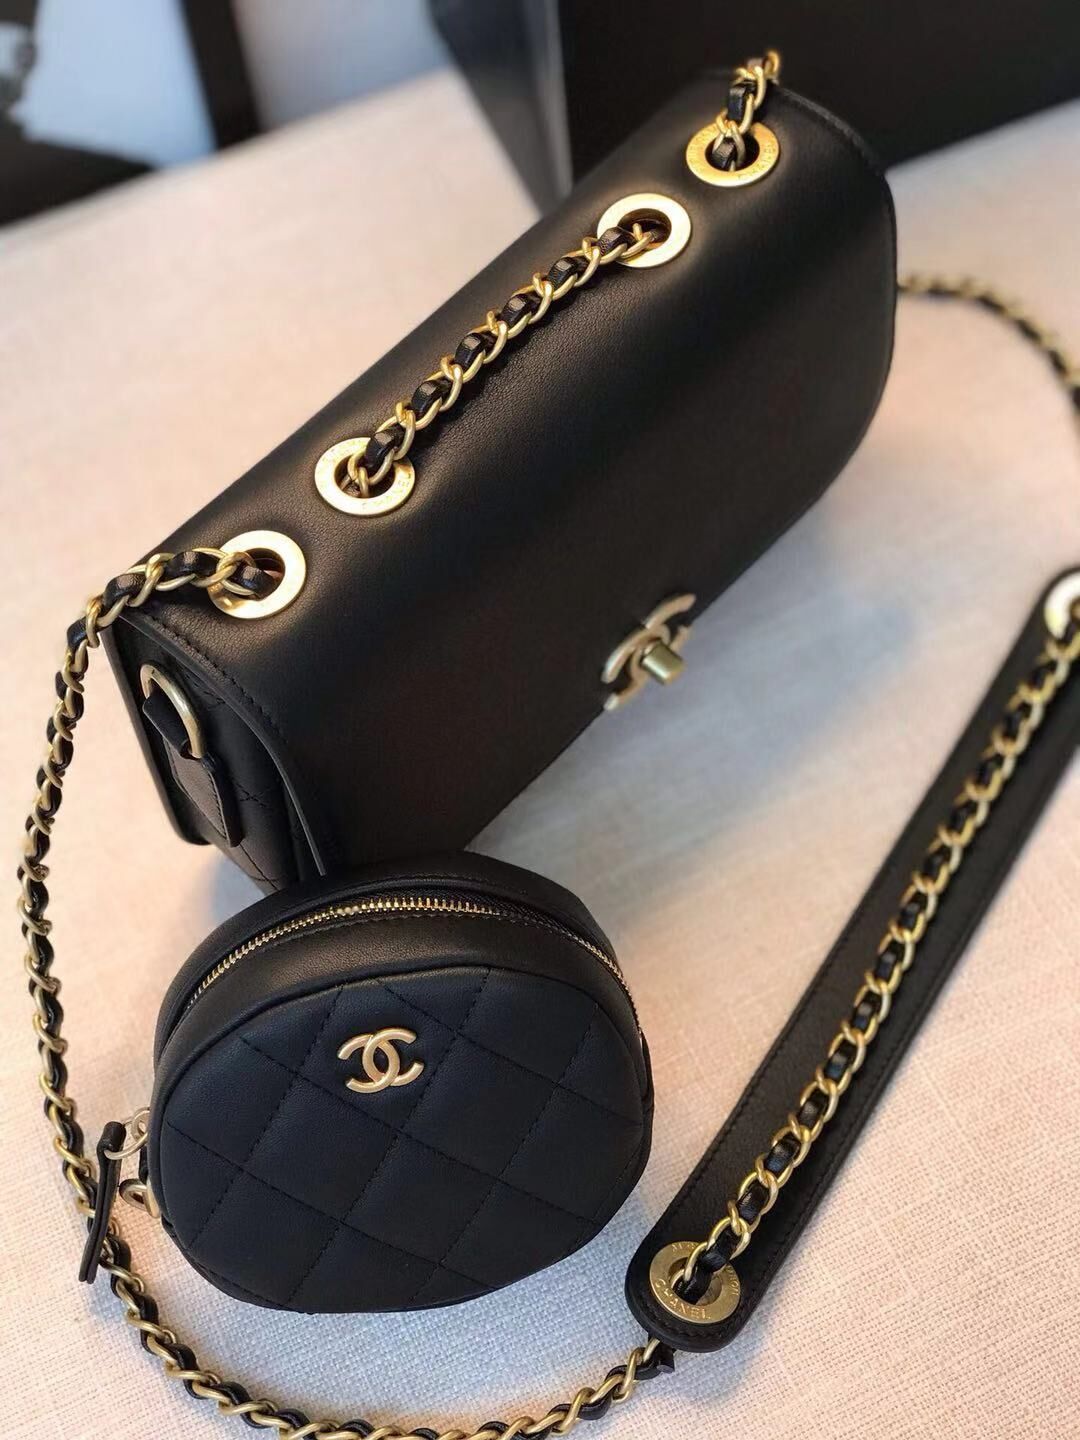 Chanel Original Leather Bag C5787 Black